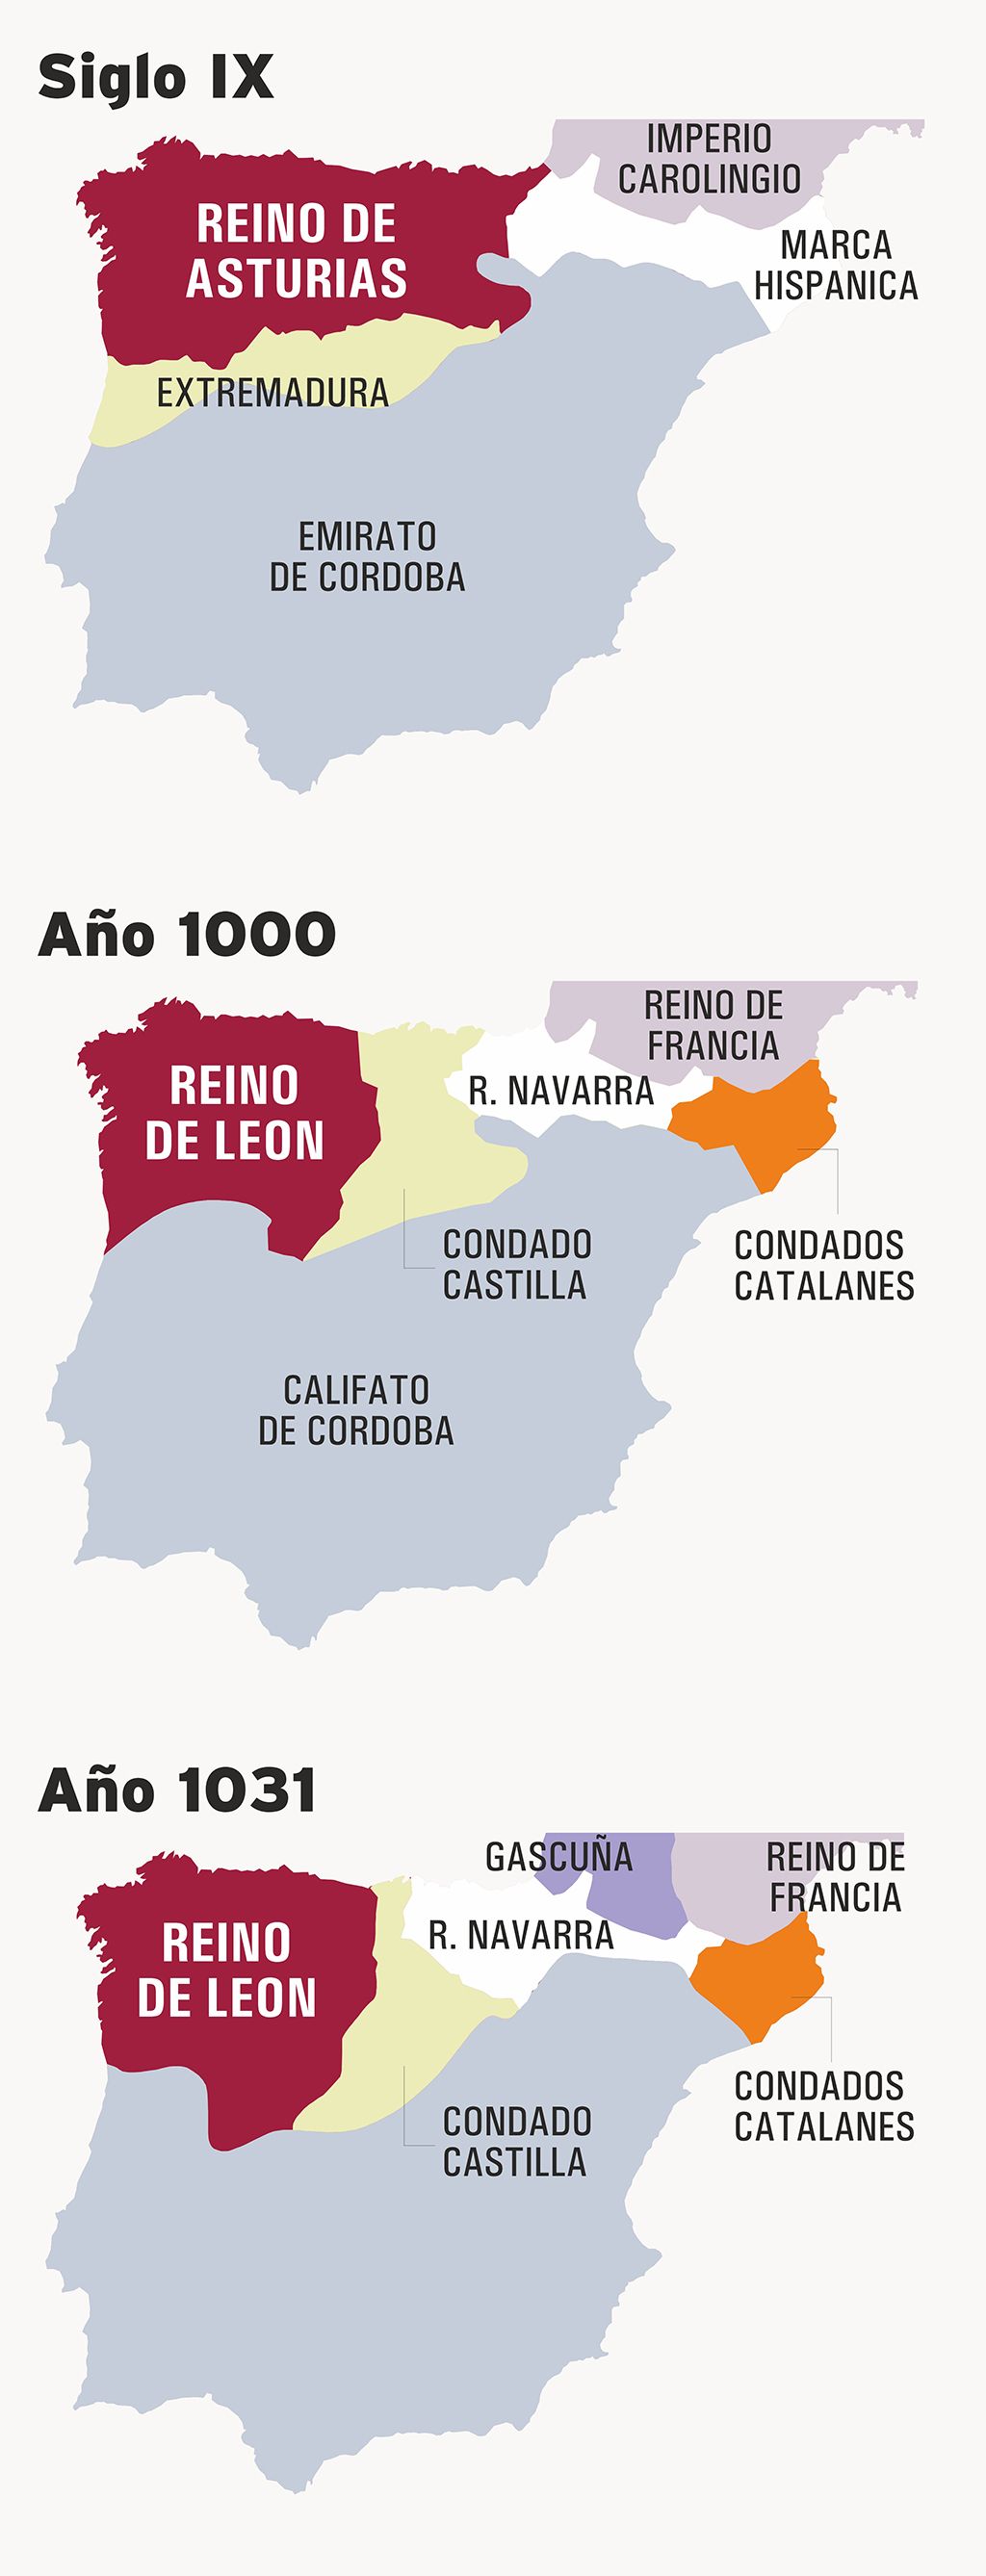 Evolución del Reino de León desde el S.IX hasta el año 1031